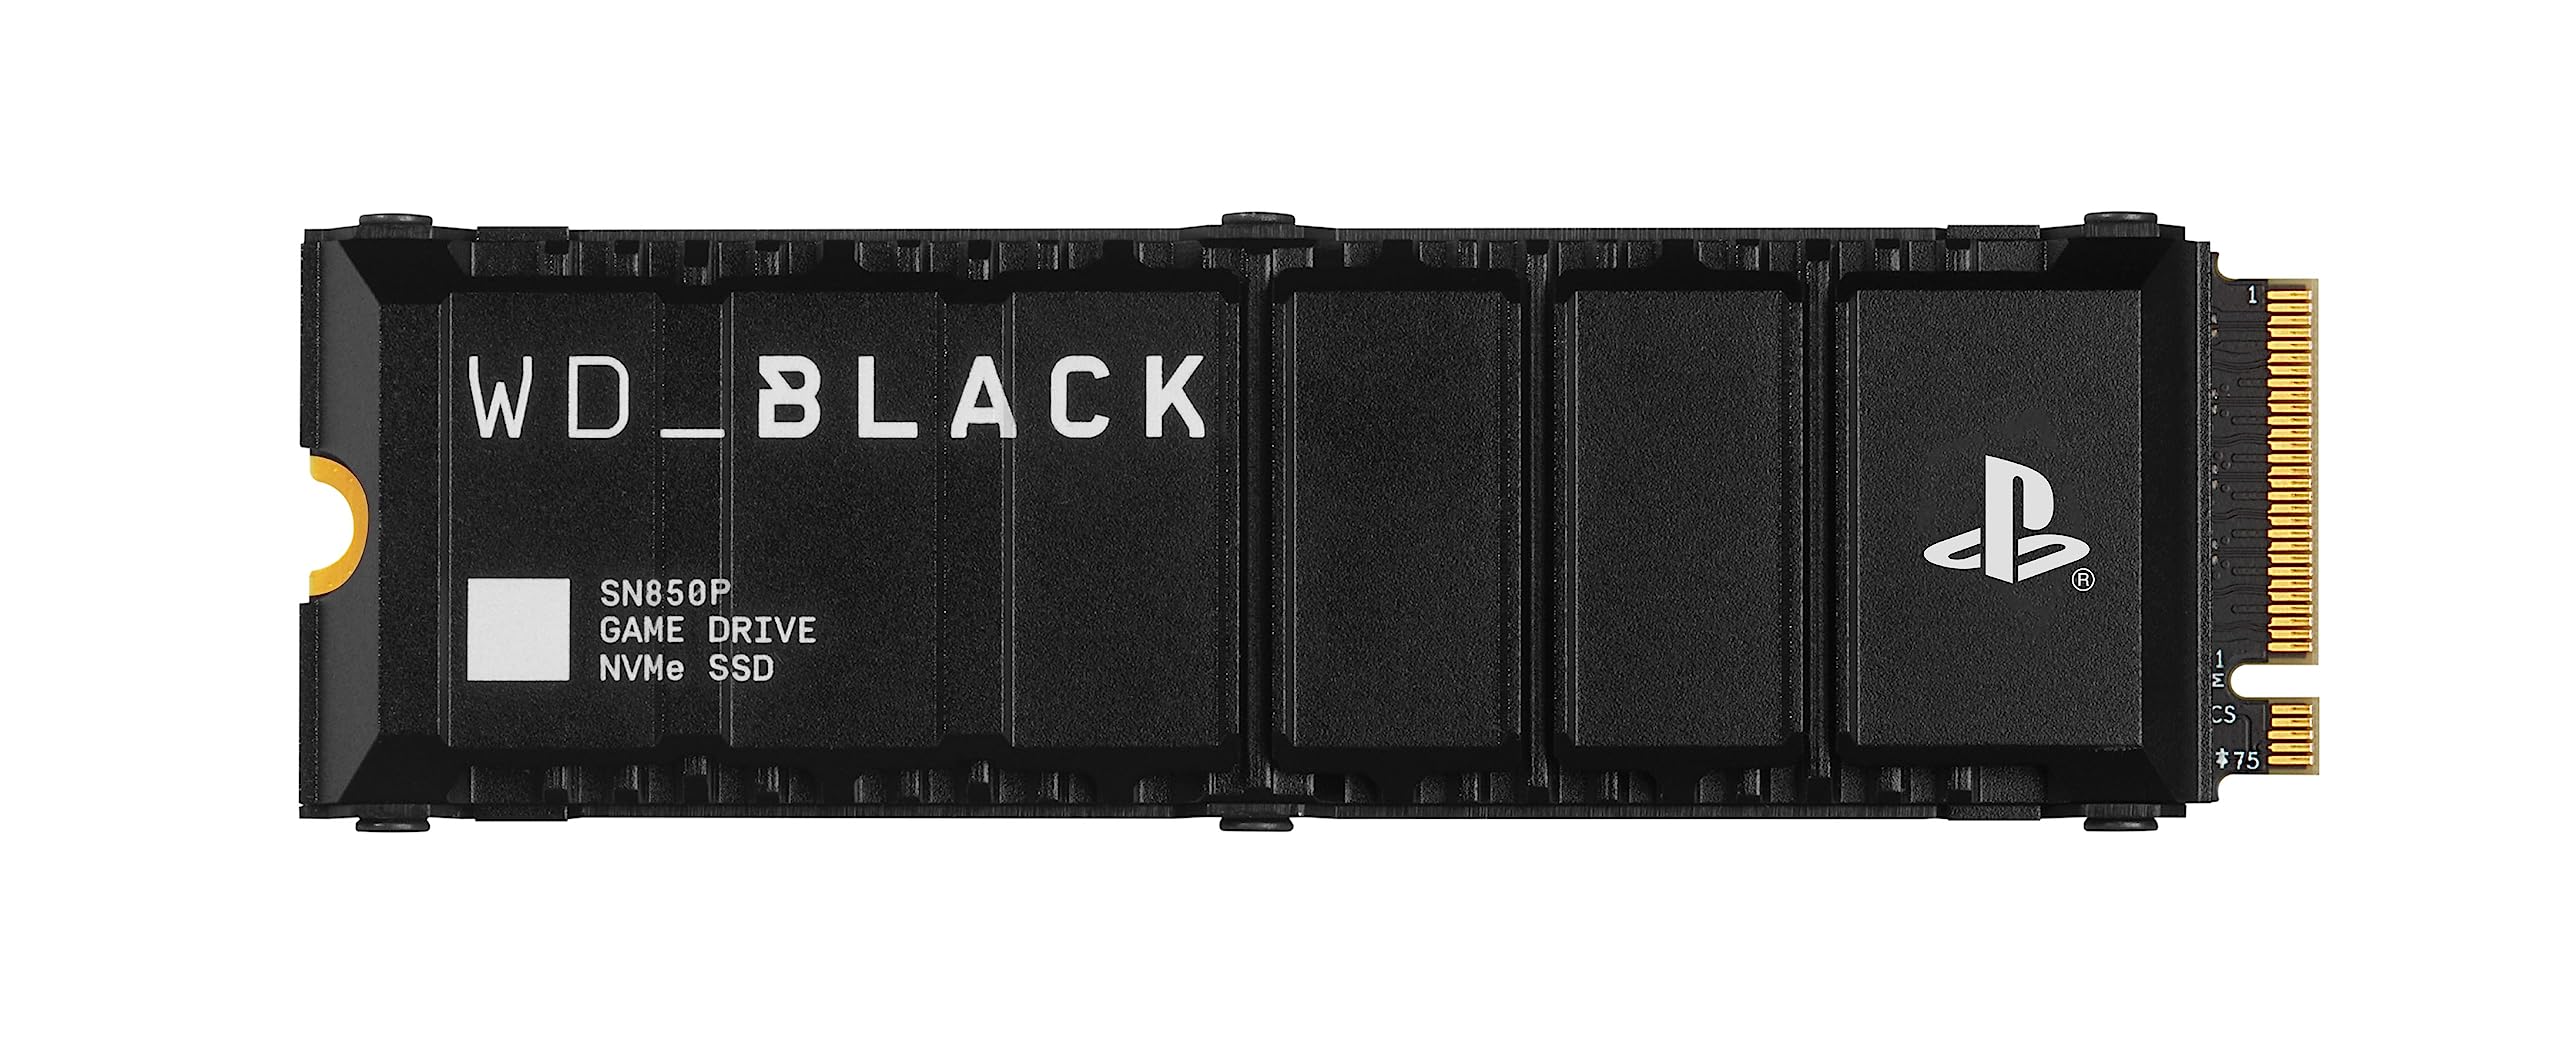 WD_BLACK SN850P 4 TB NVMe SSD Offiziell Lizenziert für PS5 Konsolen (interne Gaming SSD; optimierter Kühlkörper; PCIe Gen4 Technologie, bis zu 7.300 MB/s Lesen, M.2 2280)